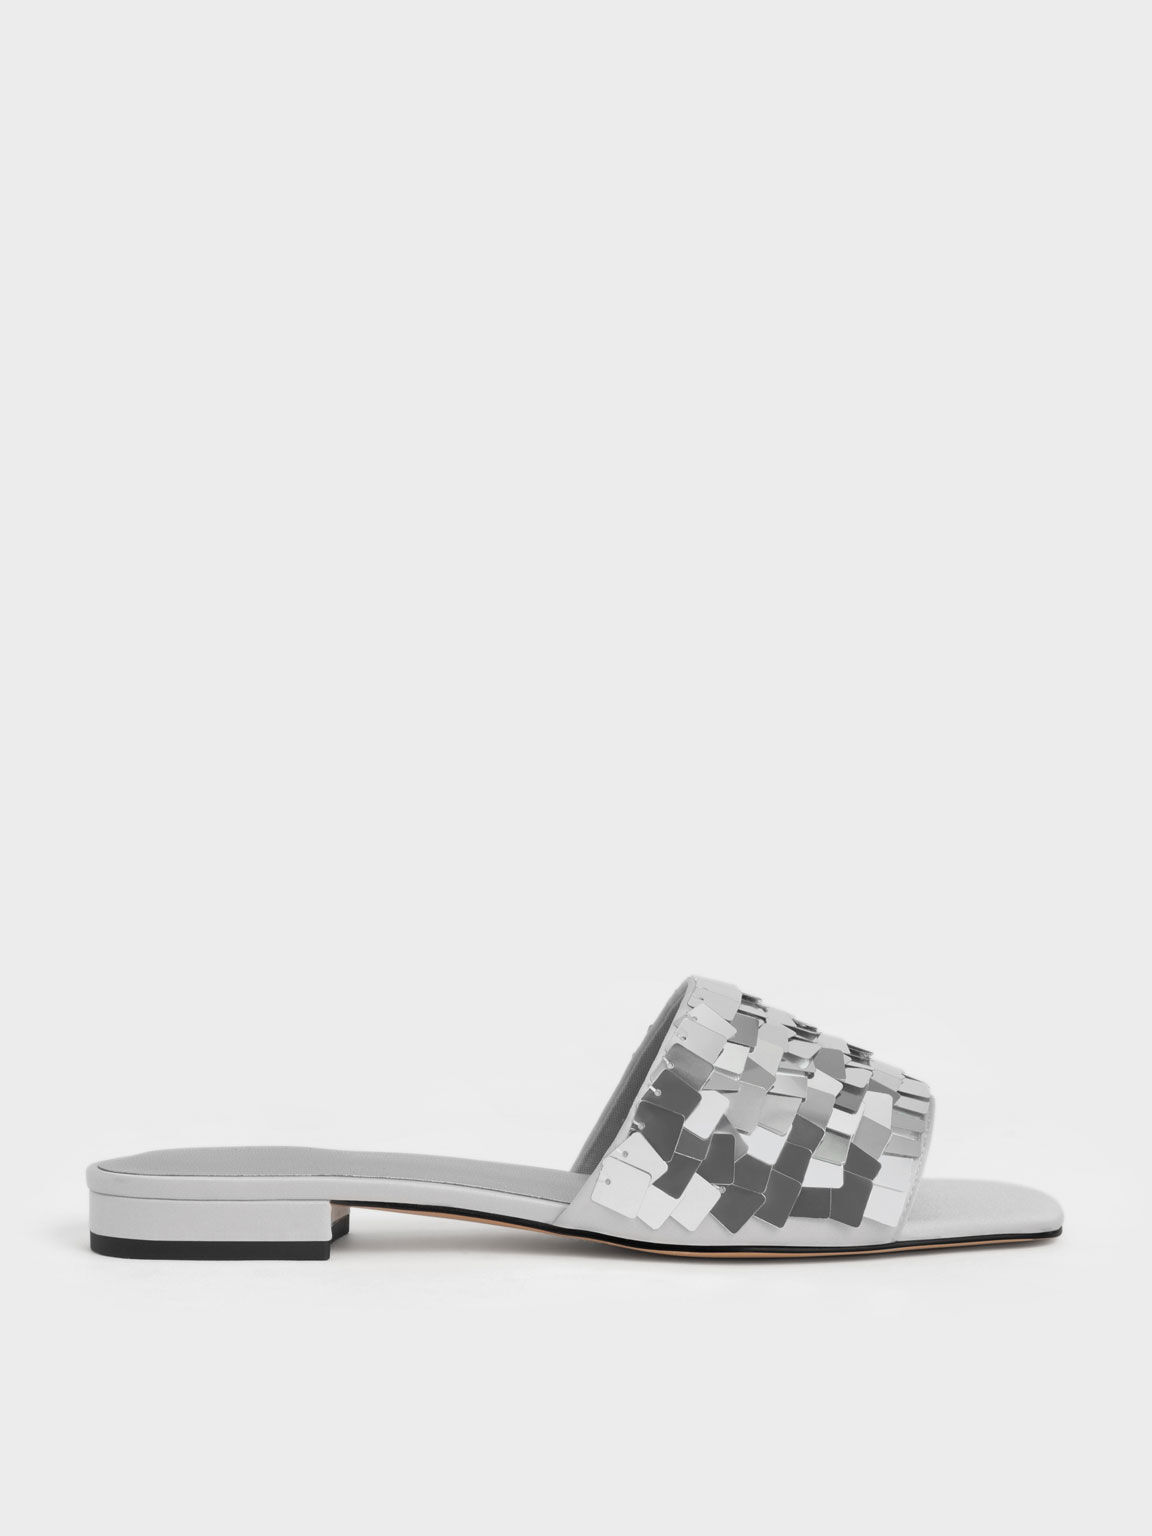 Sequinned Satin Slide Sandals, Silver, hi-res